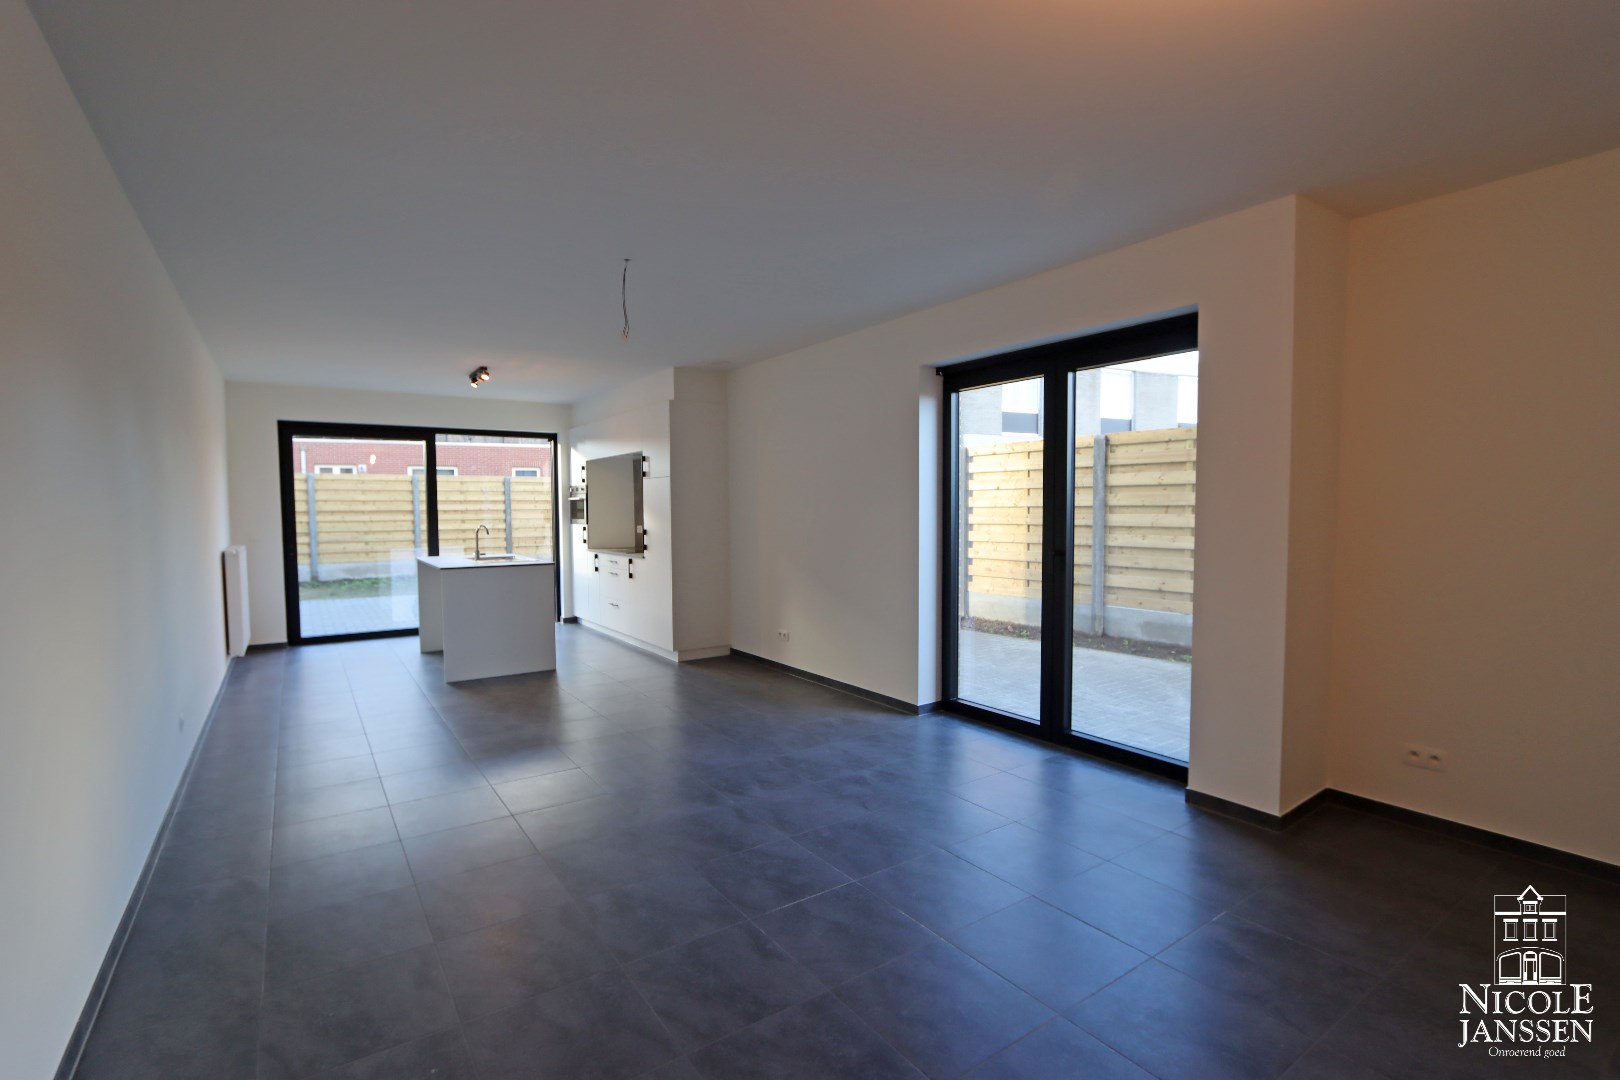 Nieuwbouw appartement met twee slaapkamers, gezellig terras, autostandplaats en ruime berging in Molenbeersel 